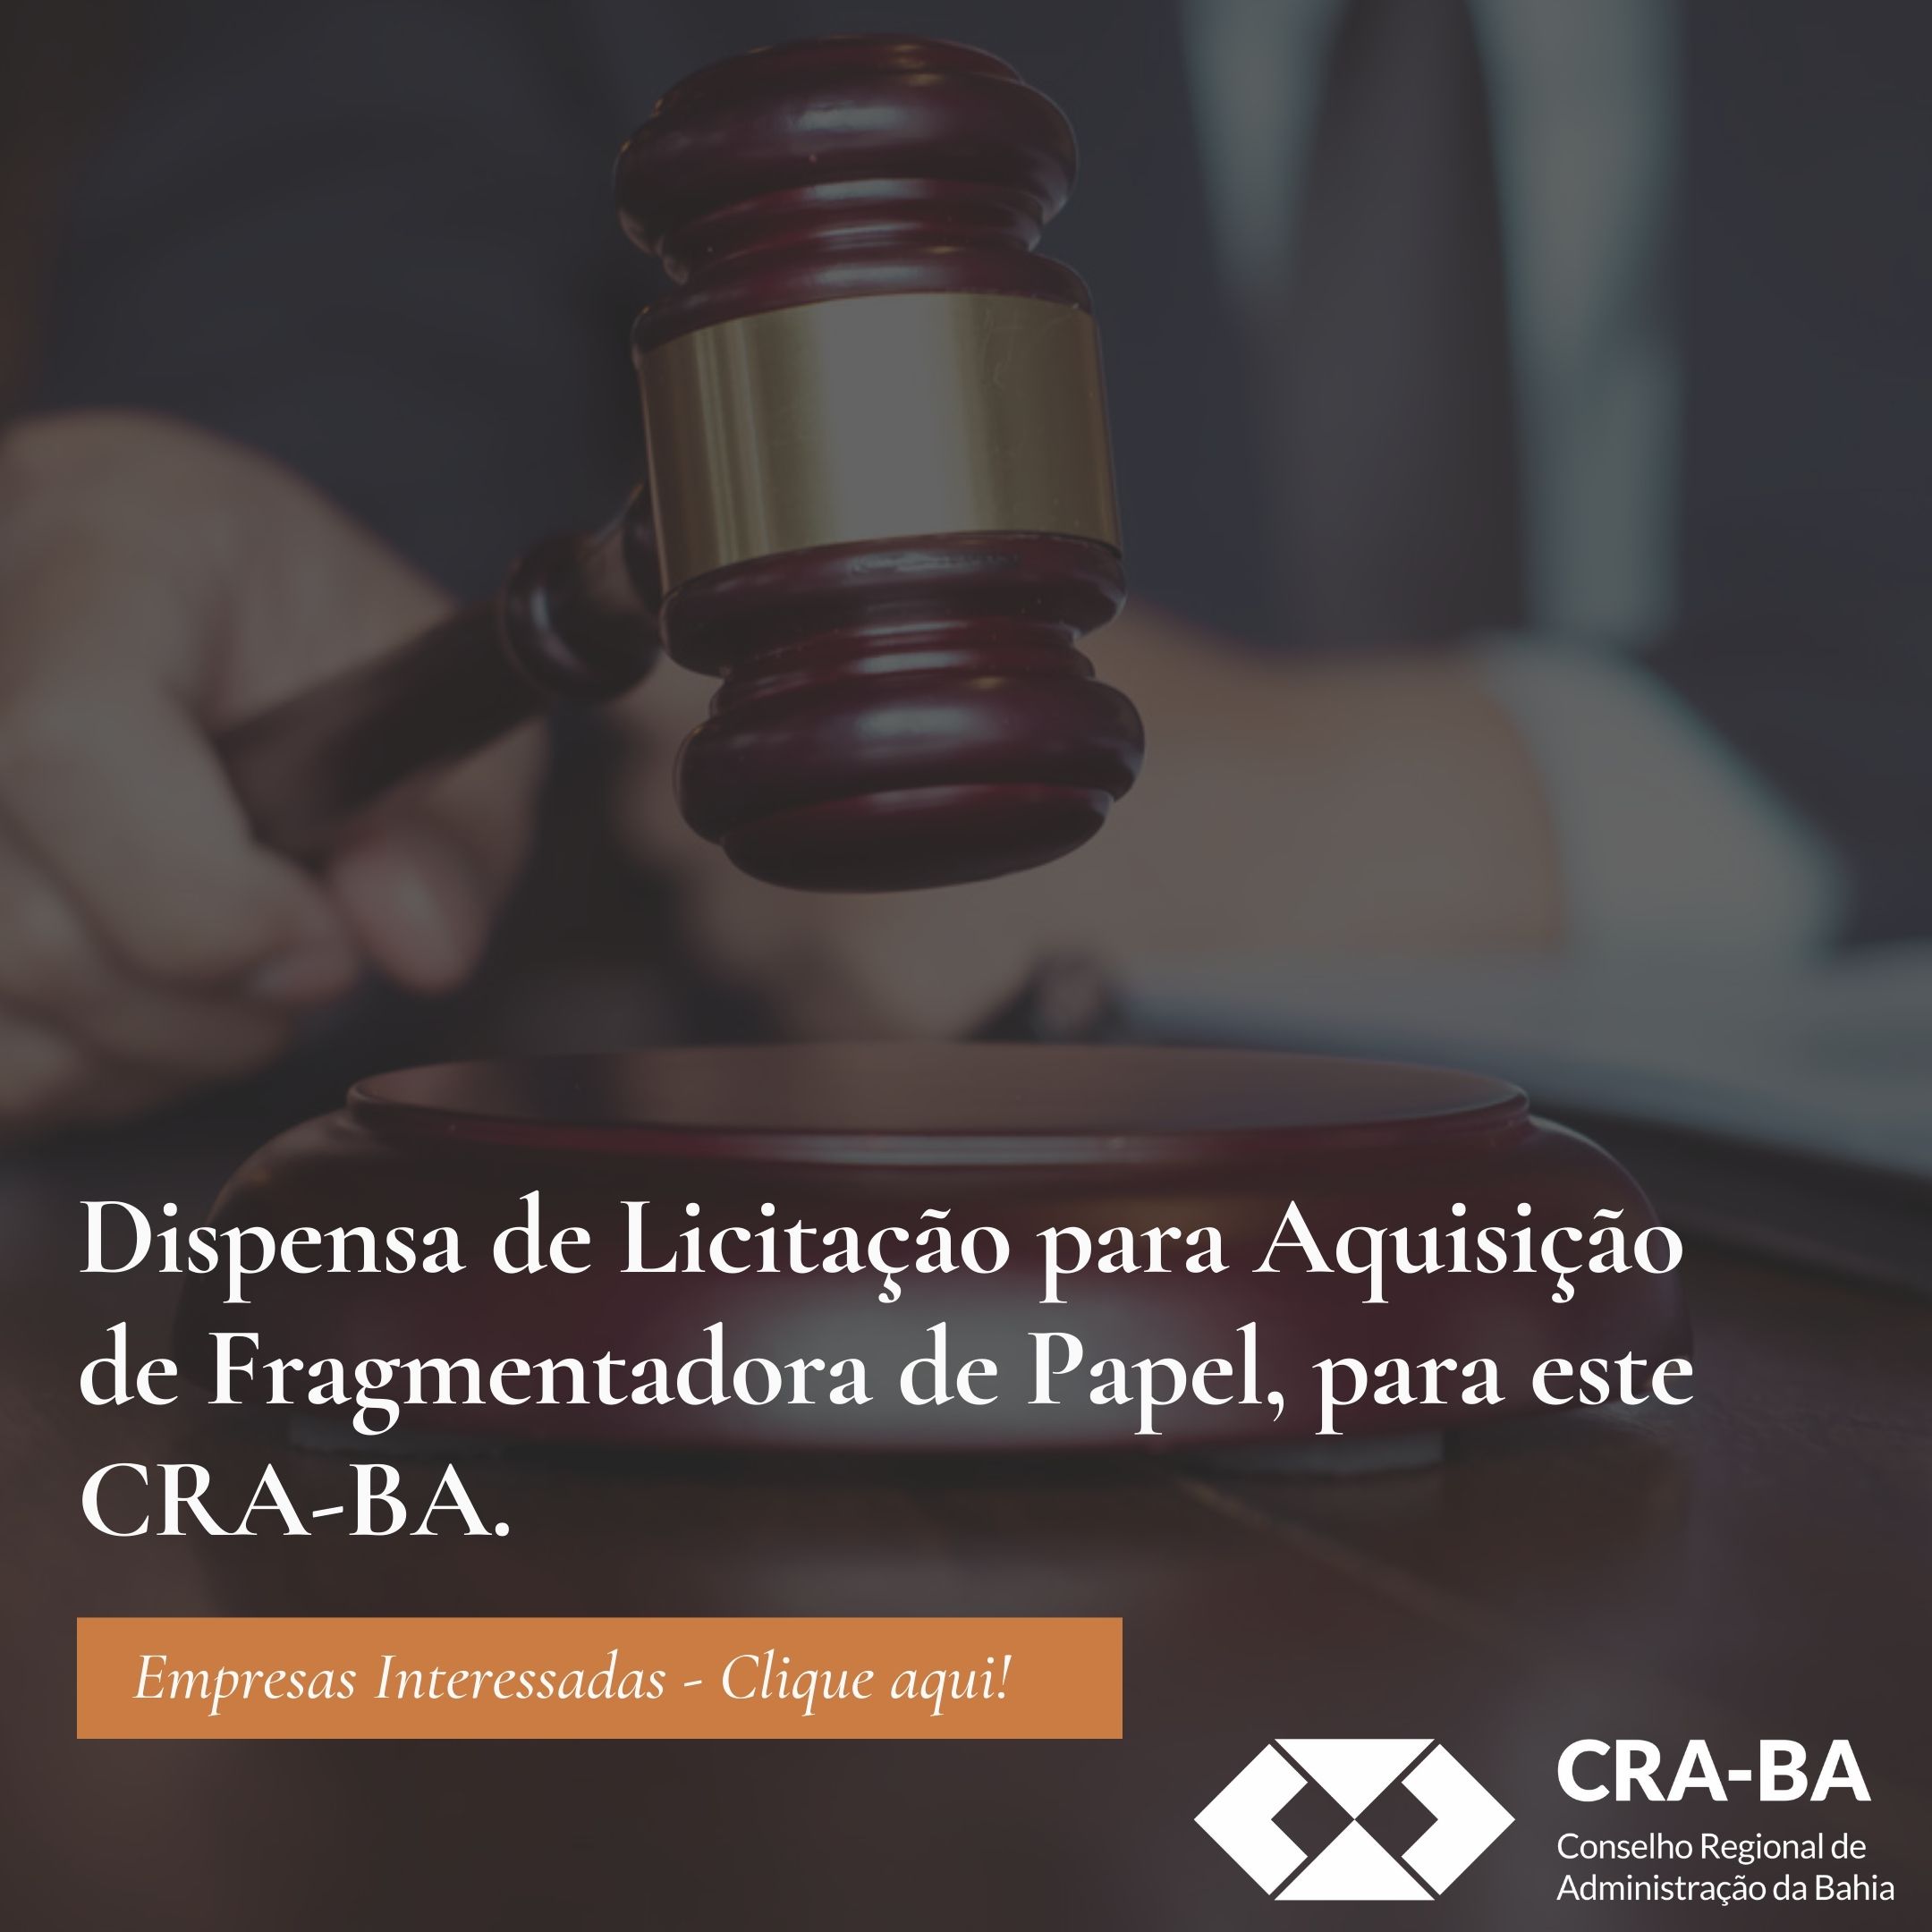 You are currently viewing Dispensa de Licitação para Aquisição de Fragmentadora de Papel, para este CRA-BA